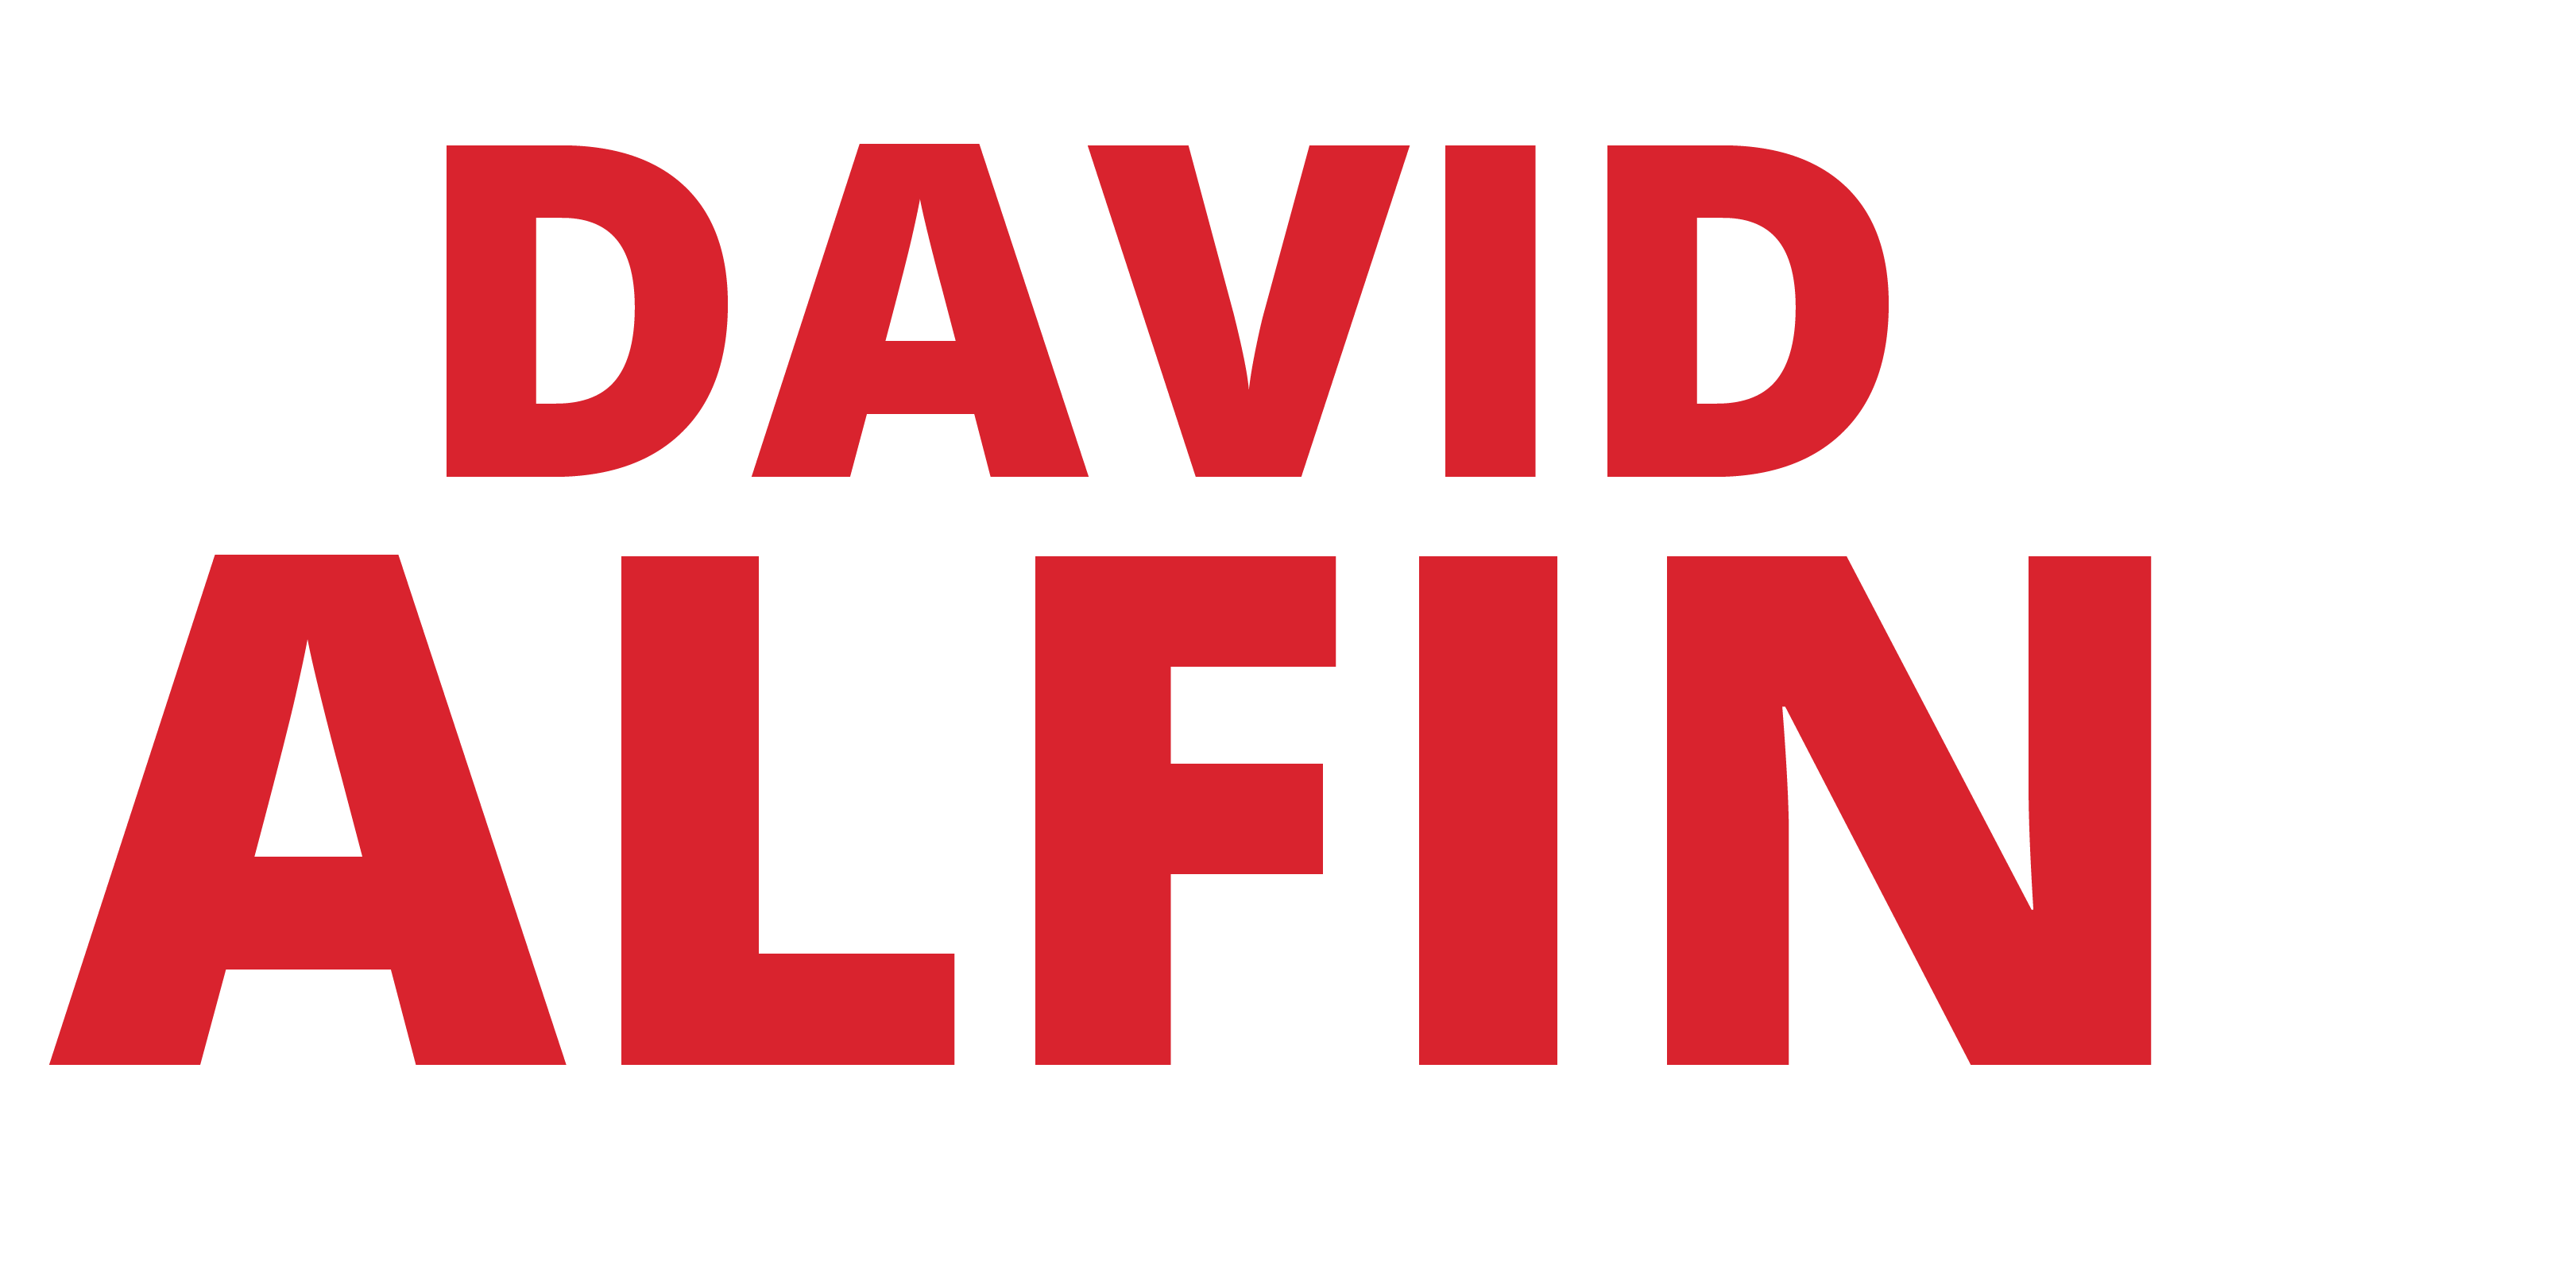 Re-Elect Mayor David Alfin